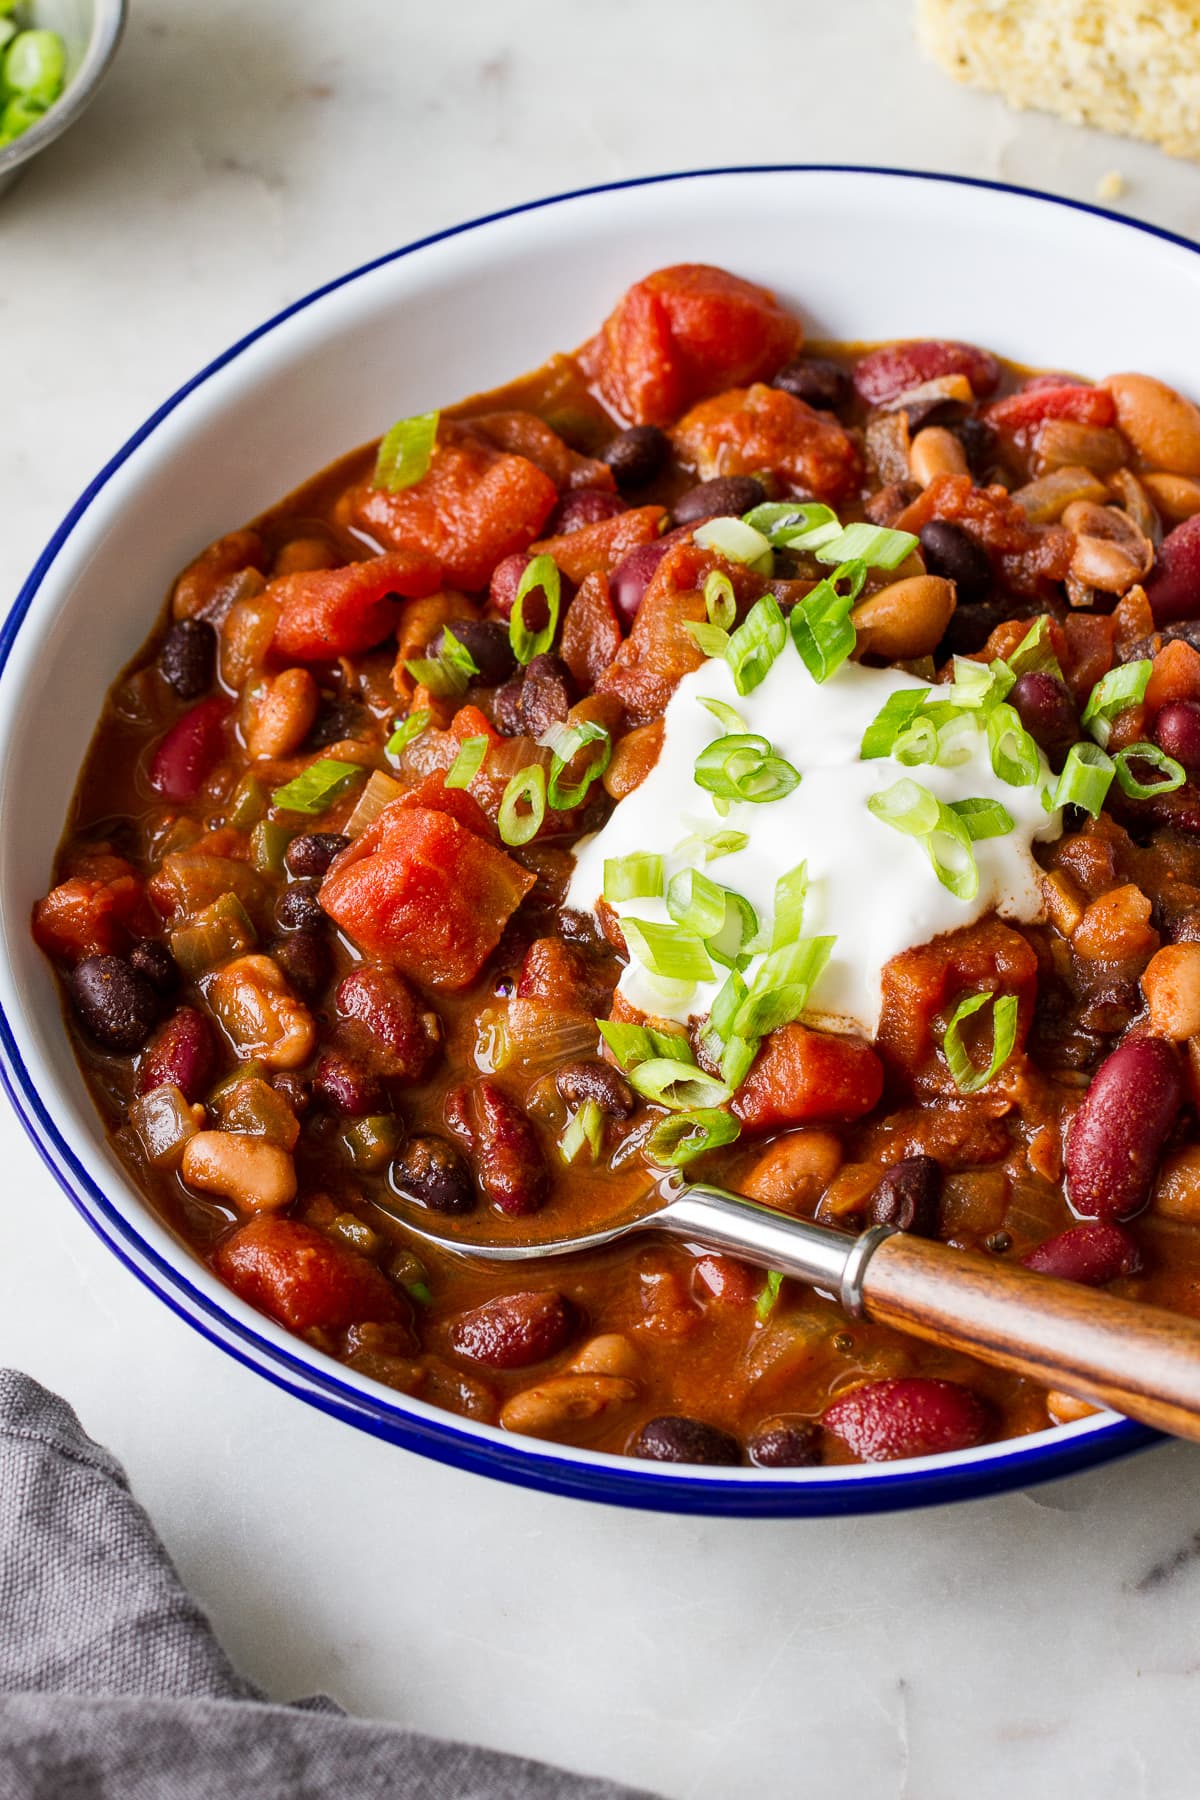 Easy Three Bean Chili Recipe - The Simple Veganista